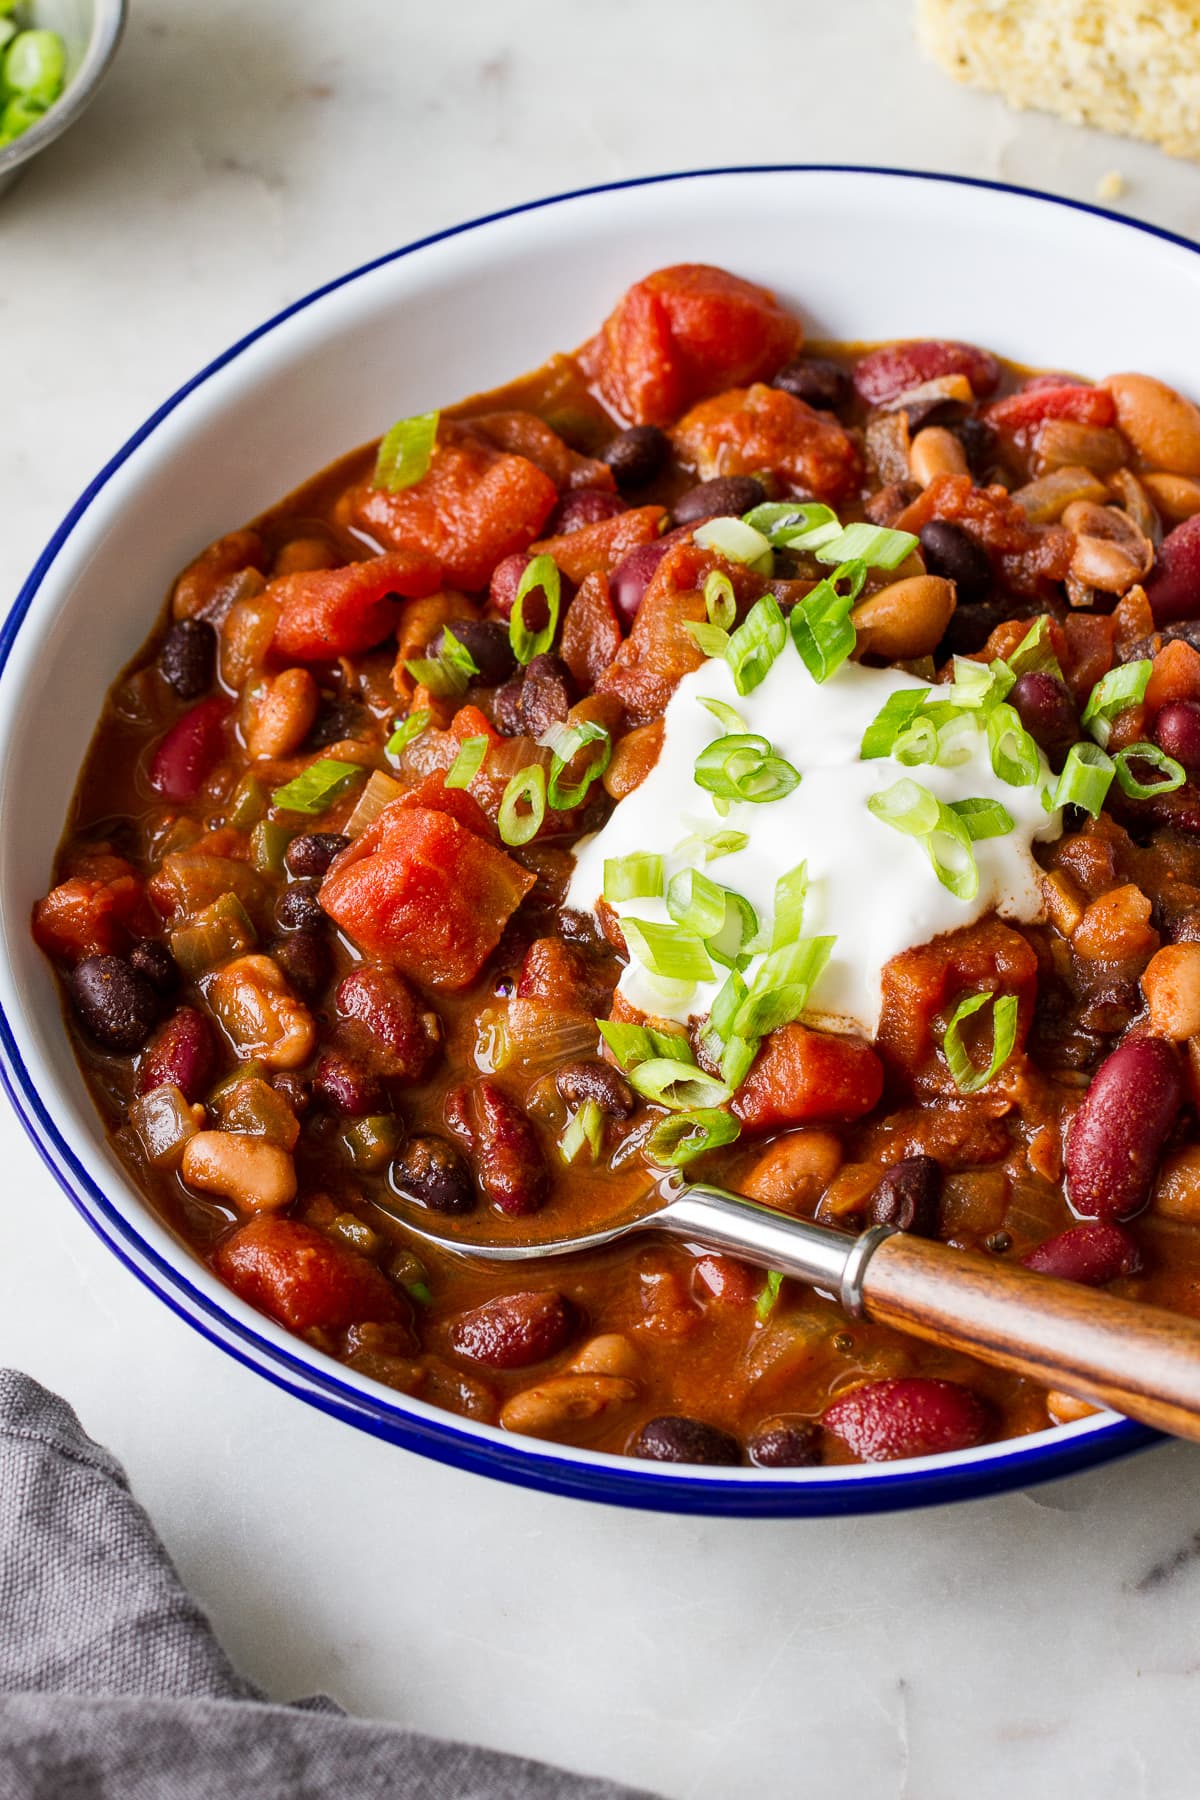 Easy Three Bean Chili Recipe - The Simple Veganista